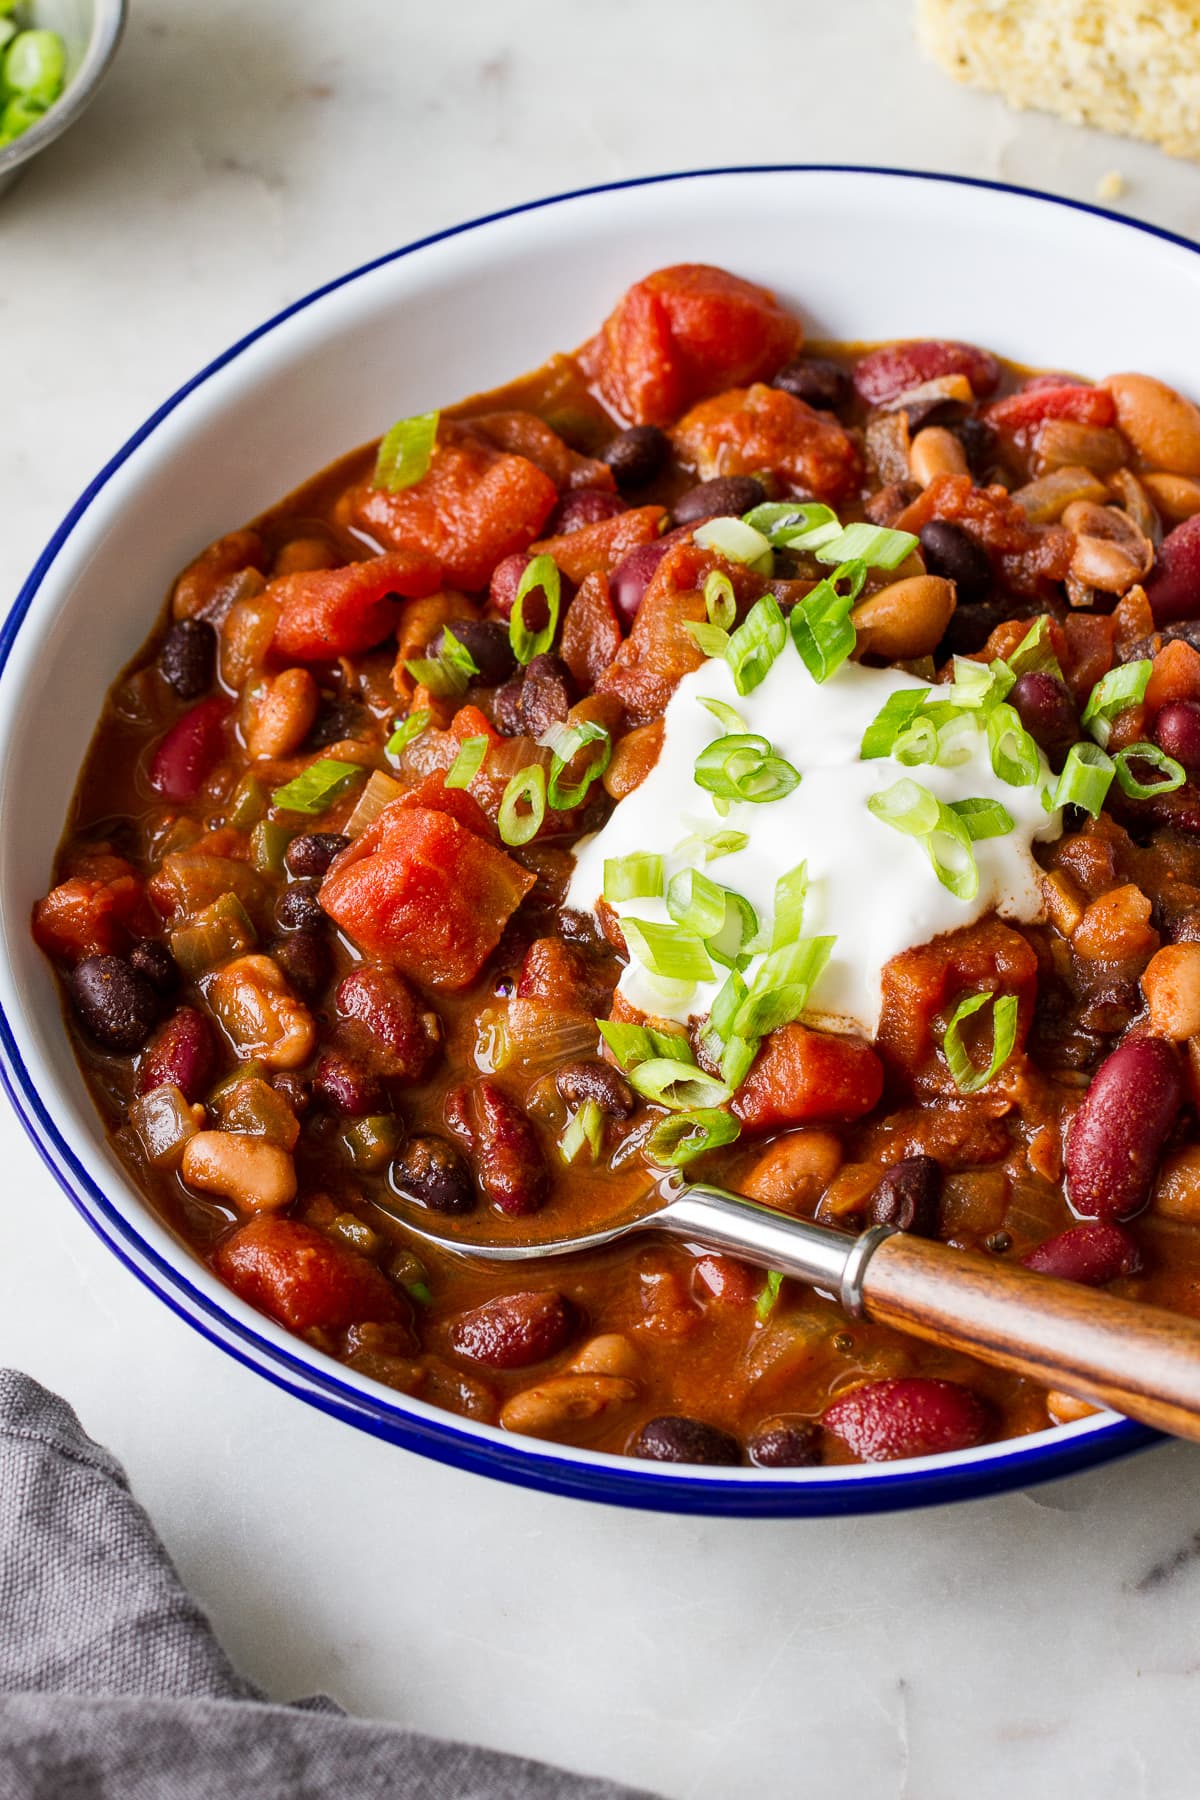 Easy Three Bean Chili Recipe - The Simple Veganista